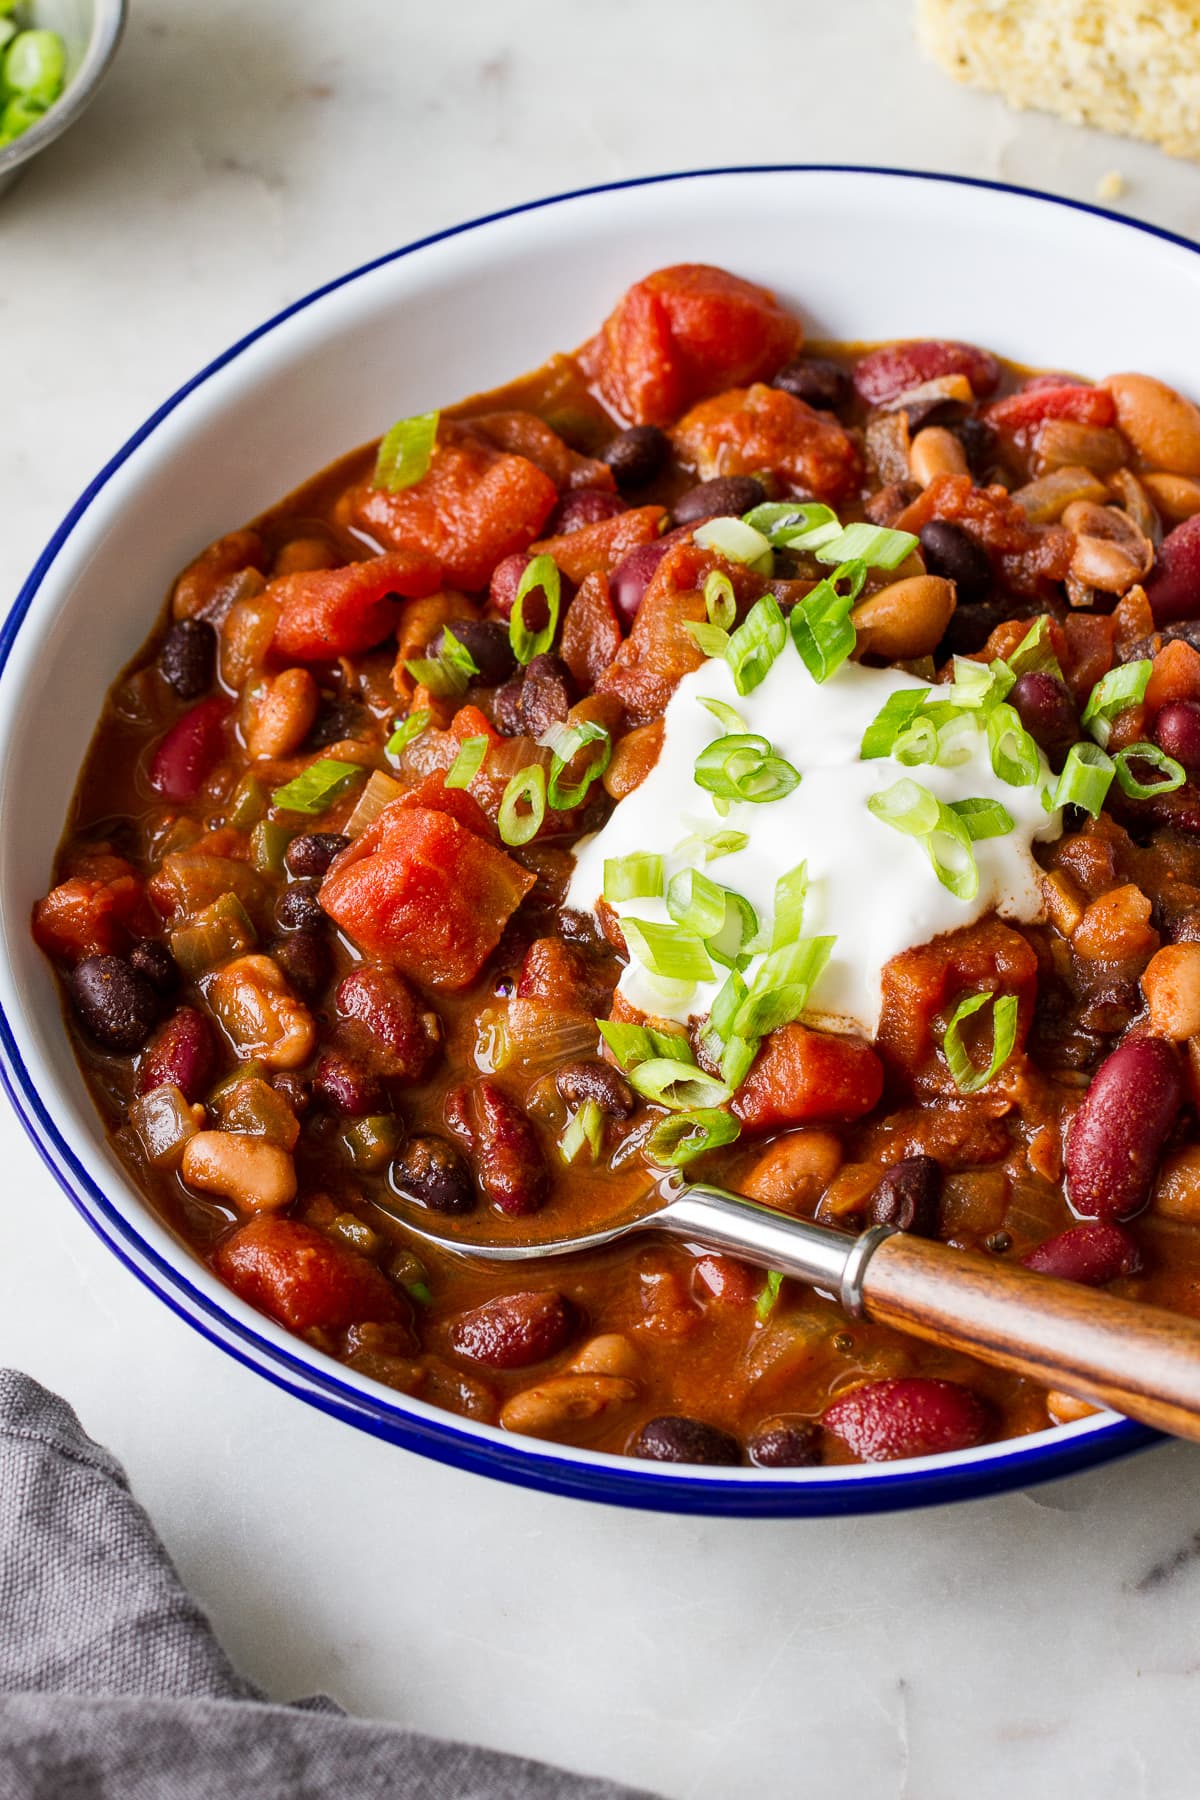 Easy Three Bean Chili Recipe - The Simple Veganista